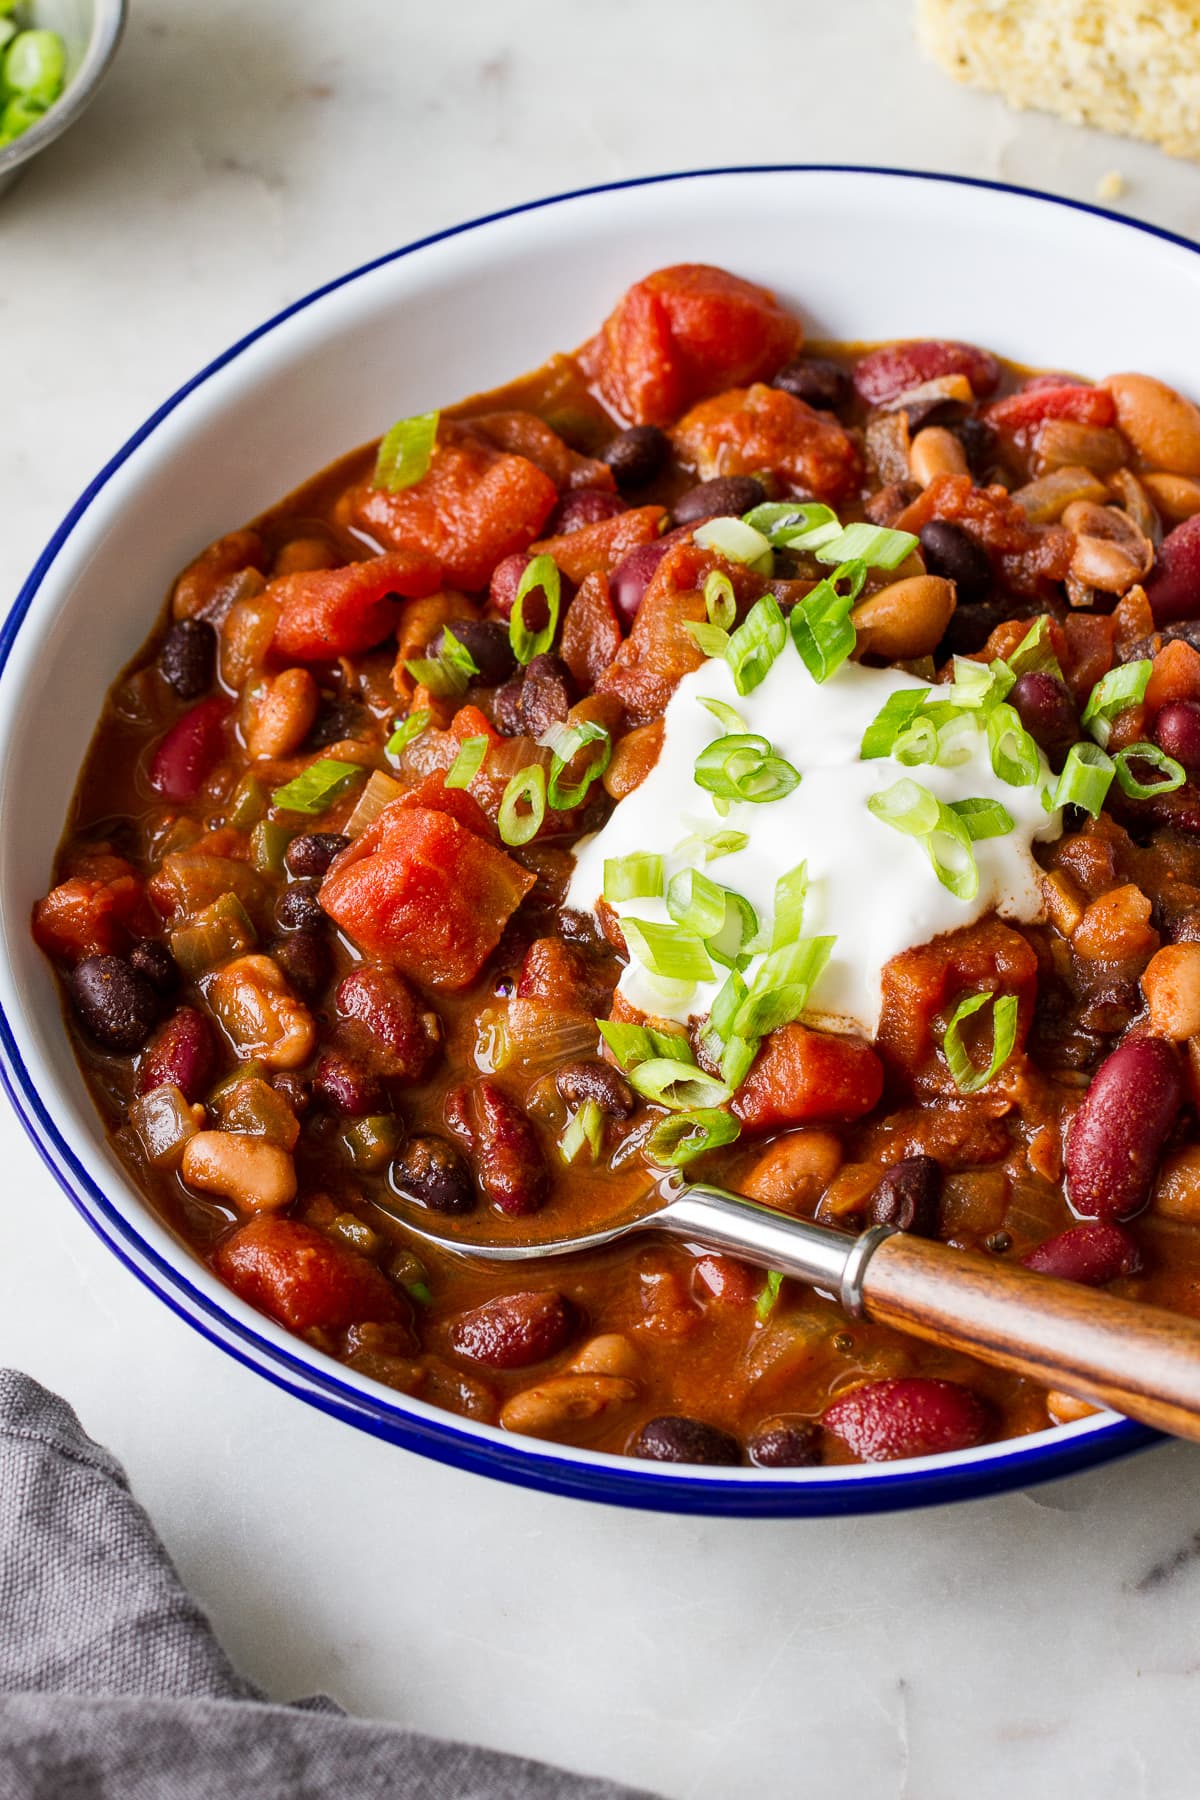 Easy Three Bean Chili Recipe - The Simple Veganista